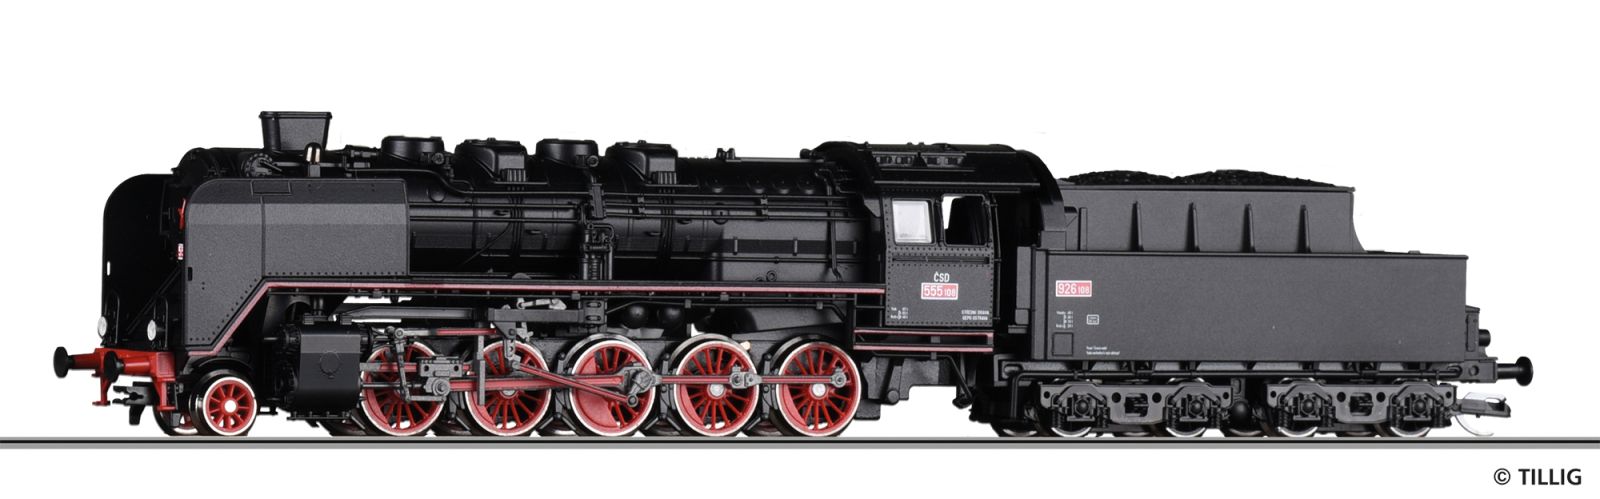 Steam locomotive ČSD